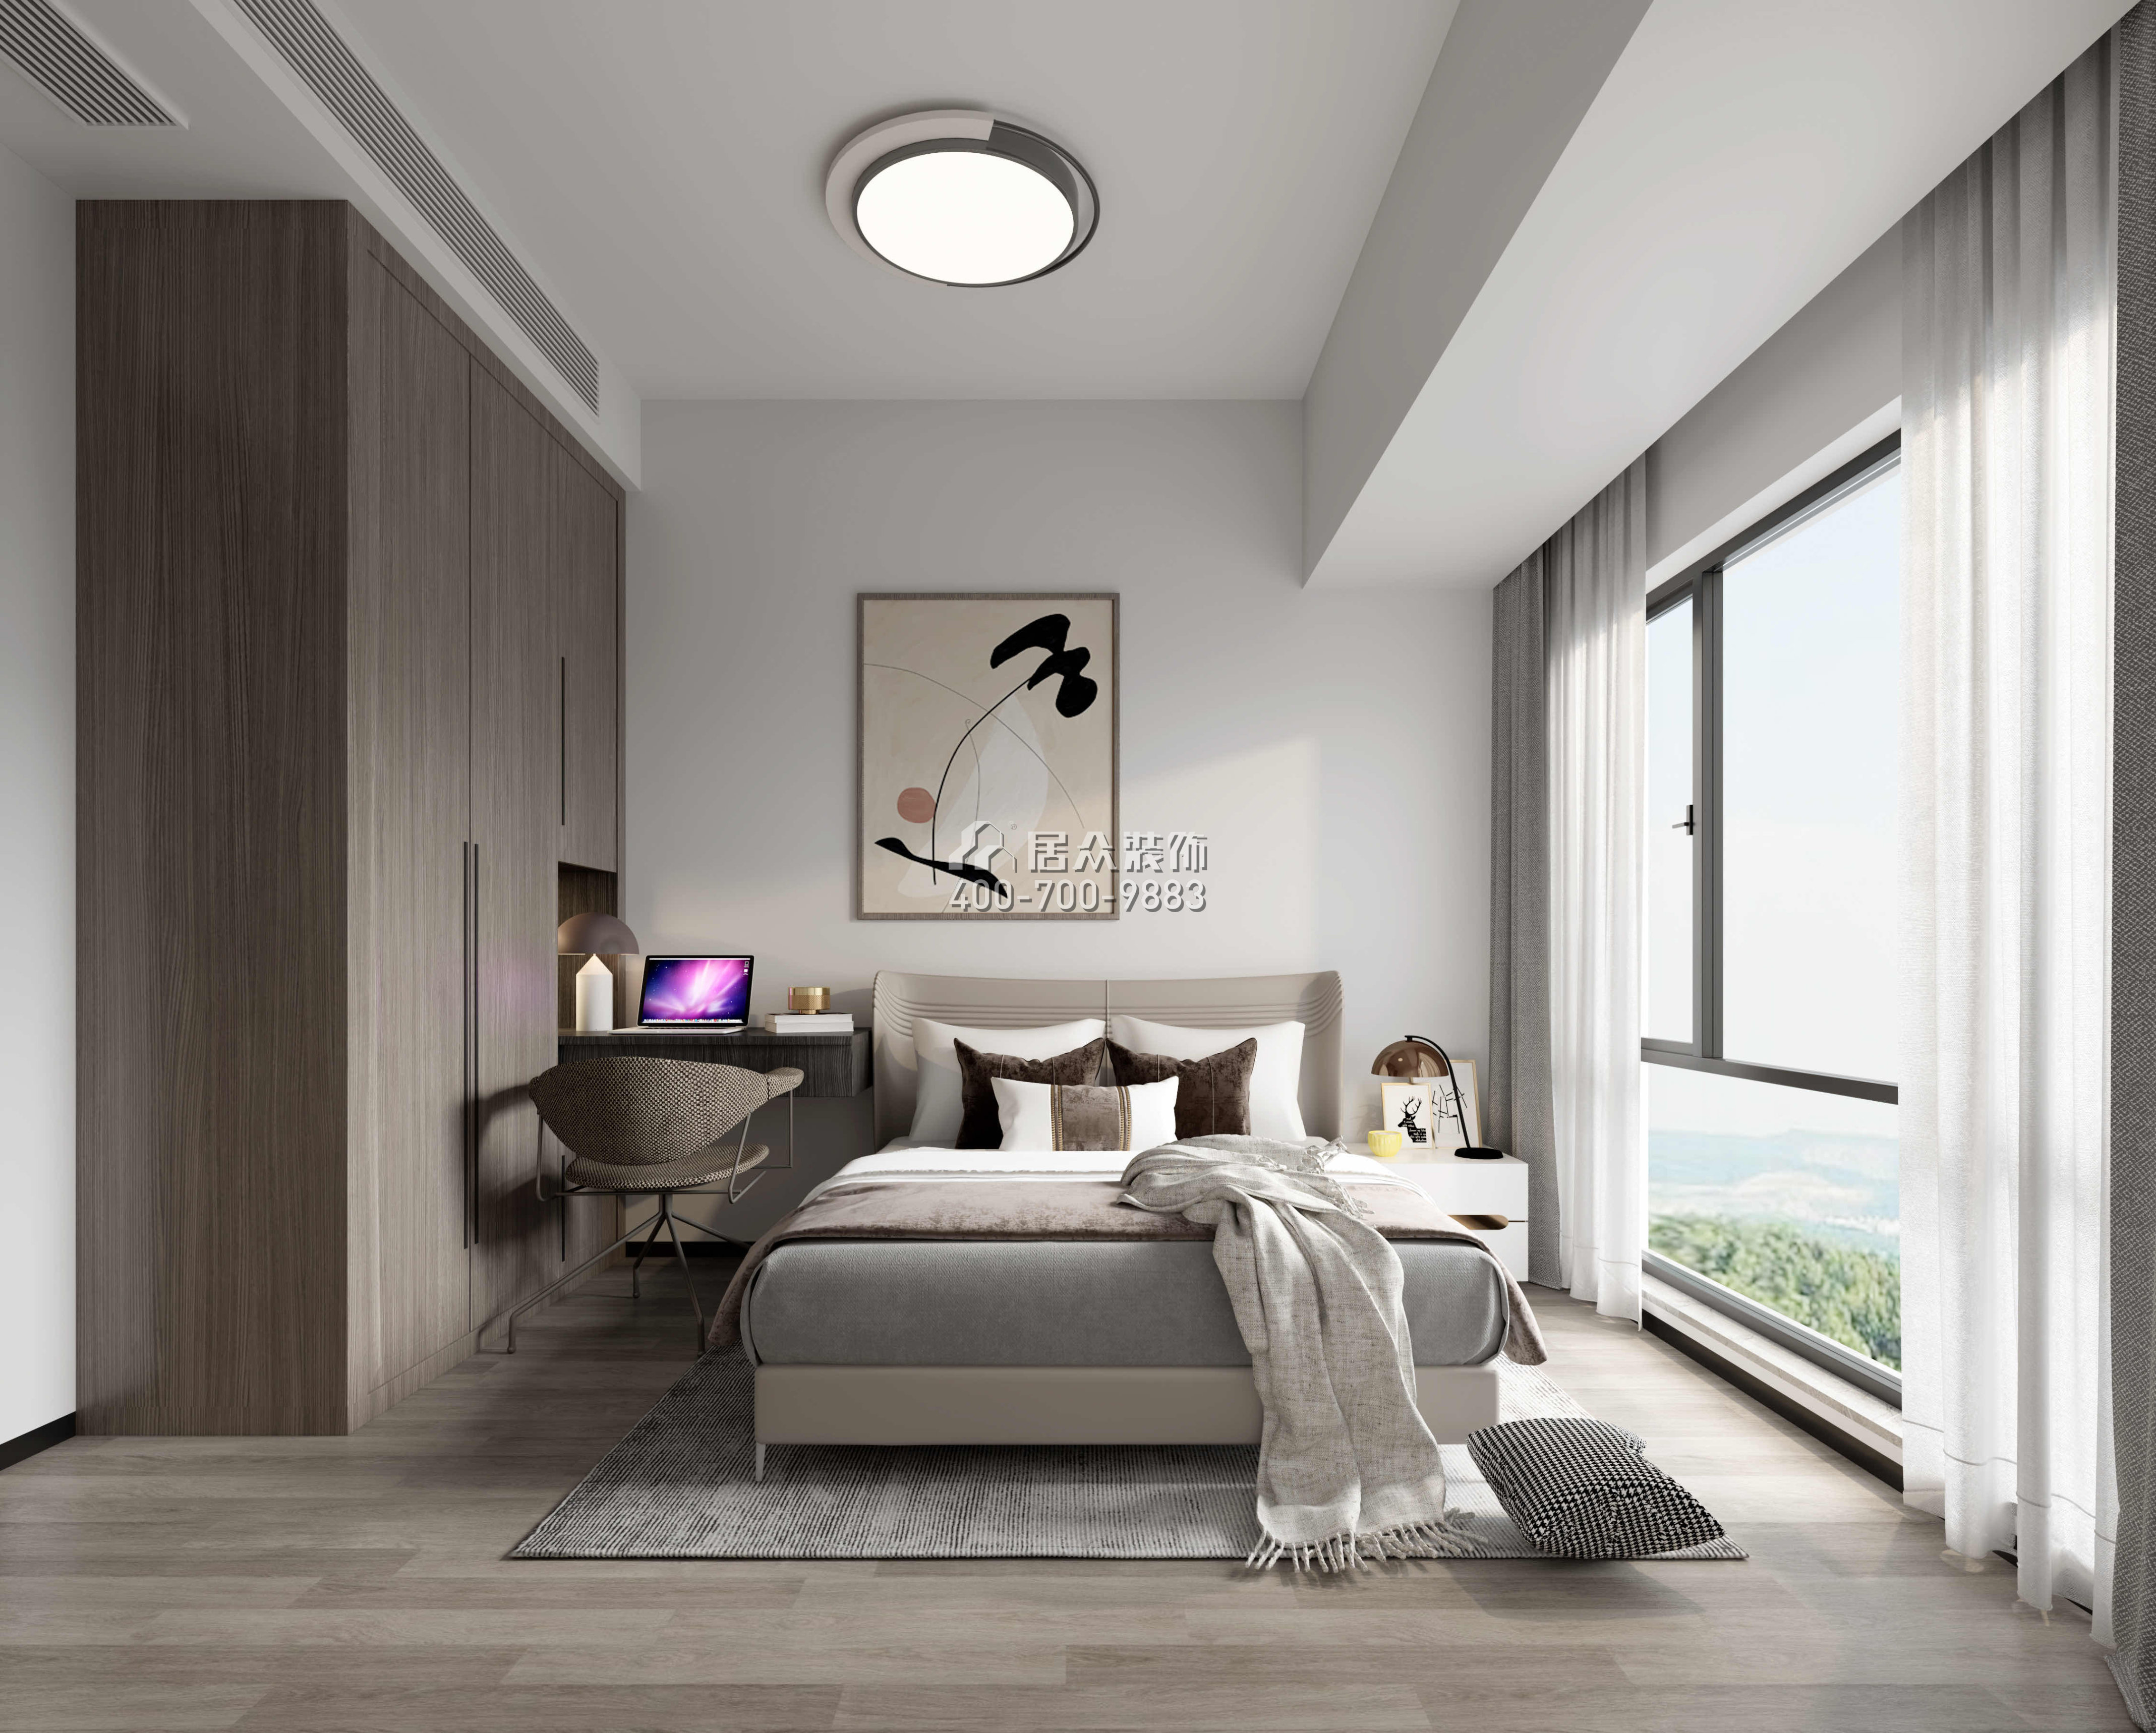 鼎勝金域世家120平方米現代簡約風格平層戶型臥室裝修效果圖